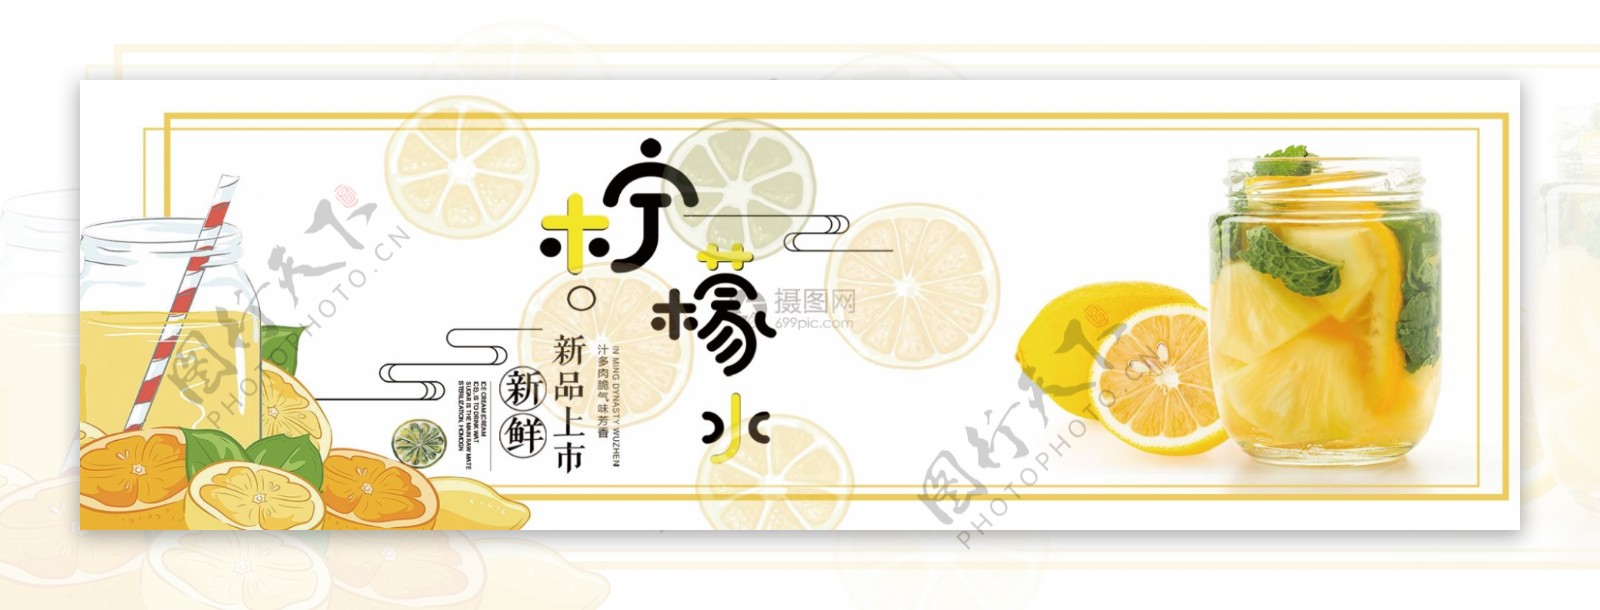 柠檬水淘宝banner